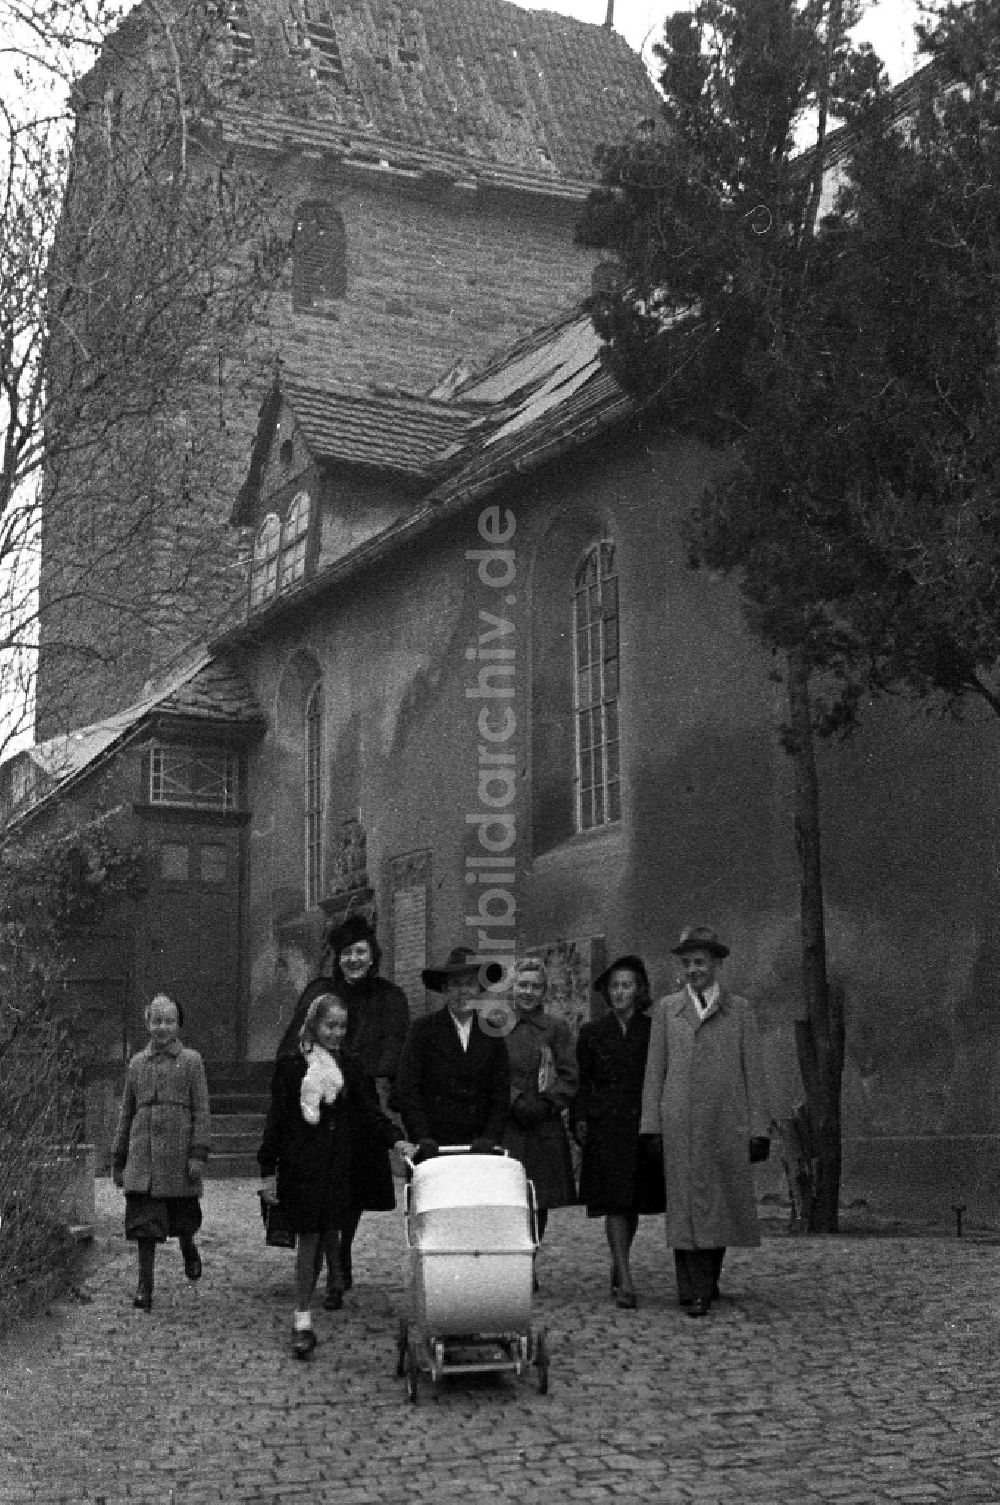 Merseburg: Sonntagsspaziergang einer Familie mit Kinderwagen in Merseburg im Bundesland Sachsen-Anhalt auf dem Gebiet der ehemaligen DDR, Deutsche Demokratische Republik